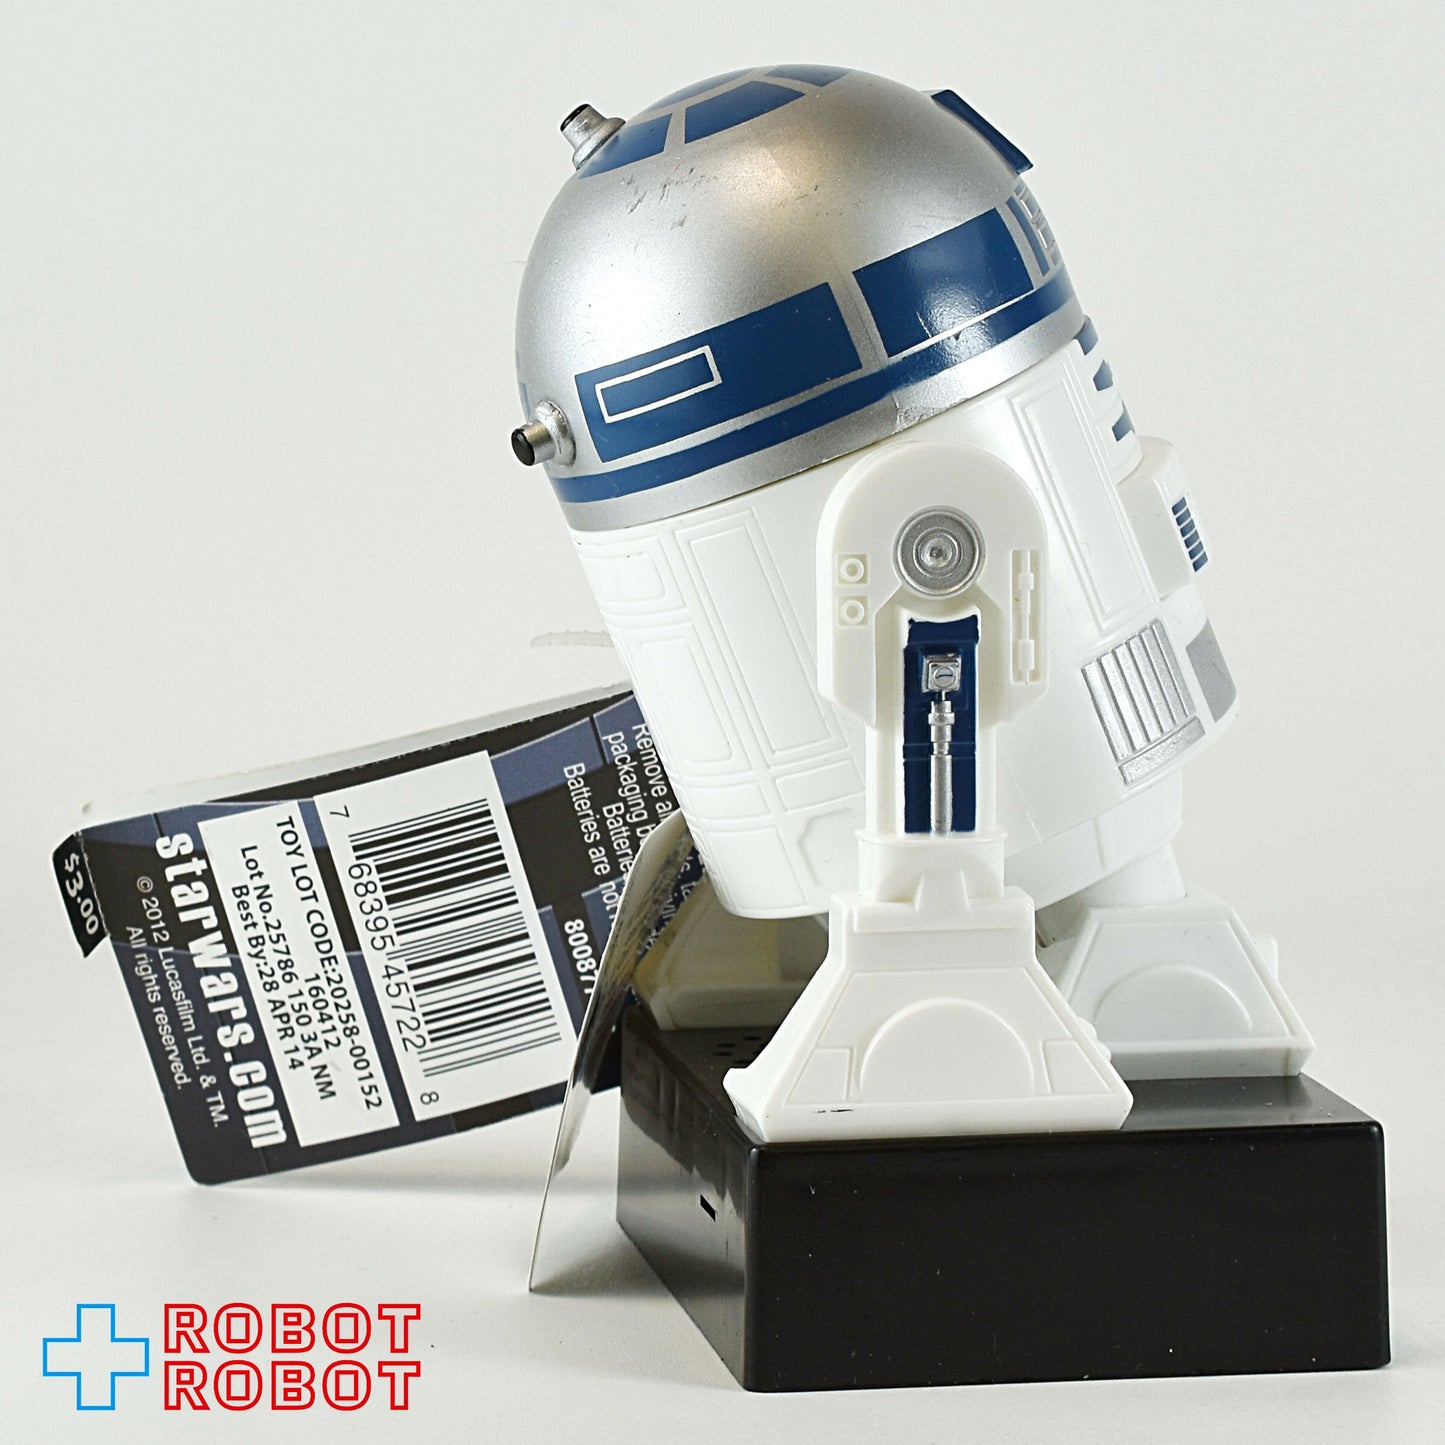 スターウォーズ R2-D2 サウンド キャンディーディスペンサー フィギュア